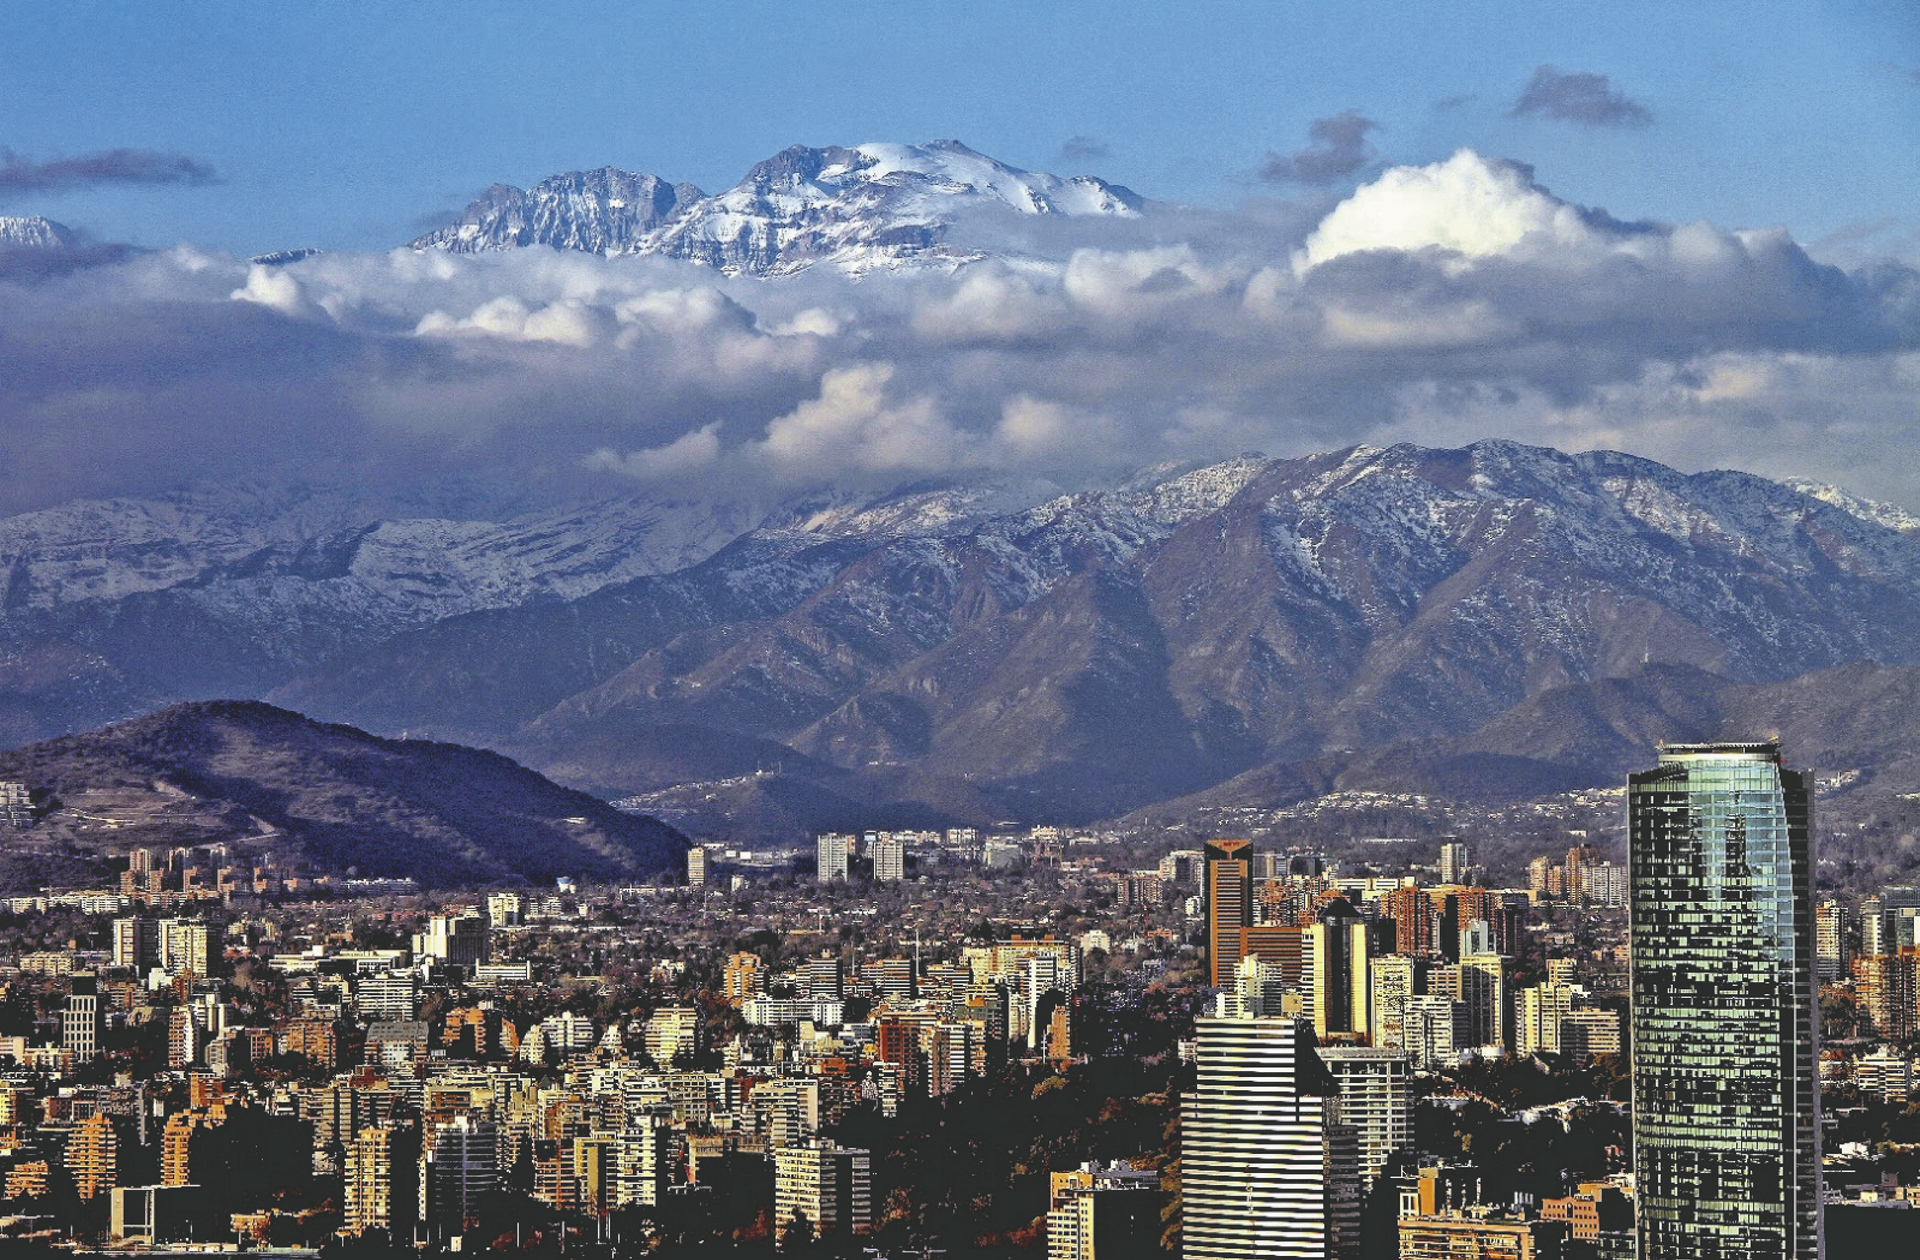 Город около гор. Город Сантьяго Чили. Южная Америка Чили Сантьяго. Сантьяго де Чили панорама. Сантья́го столица Чили..